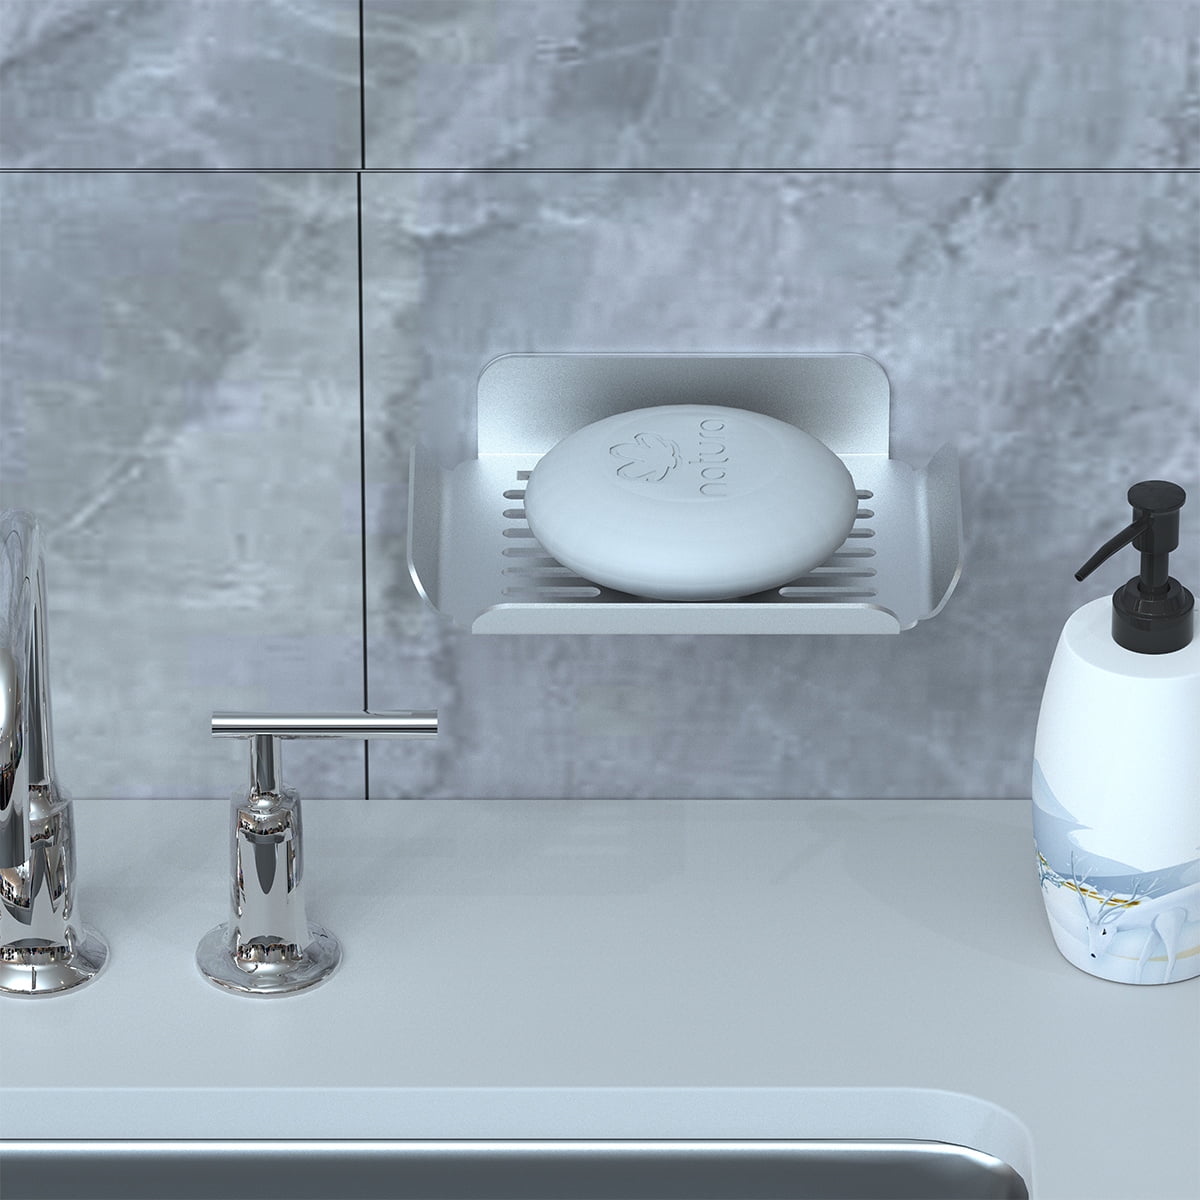 White Bathroom Wall Soap Holder  Holder Bathroom Dispenser Soap